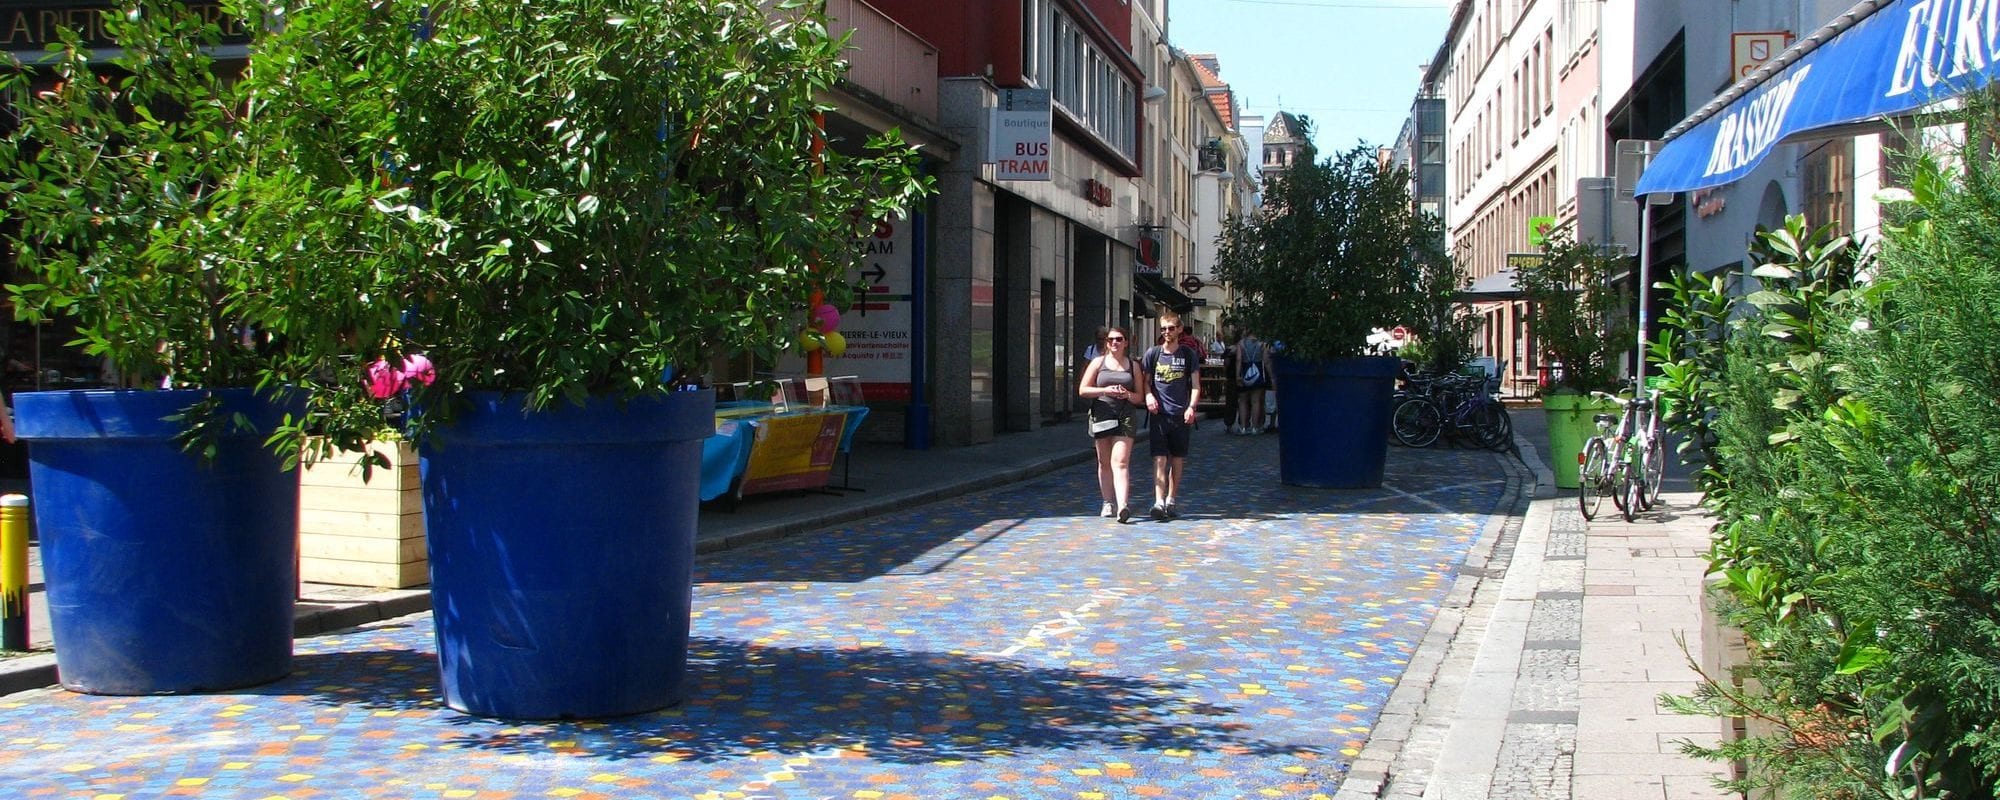 La rue du Jeu-des-Enfants devient piétonne et colorée